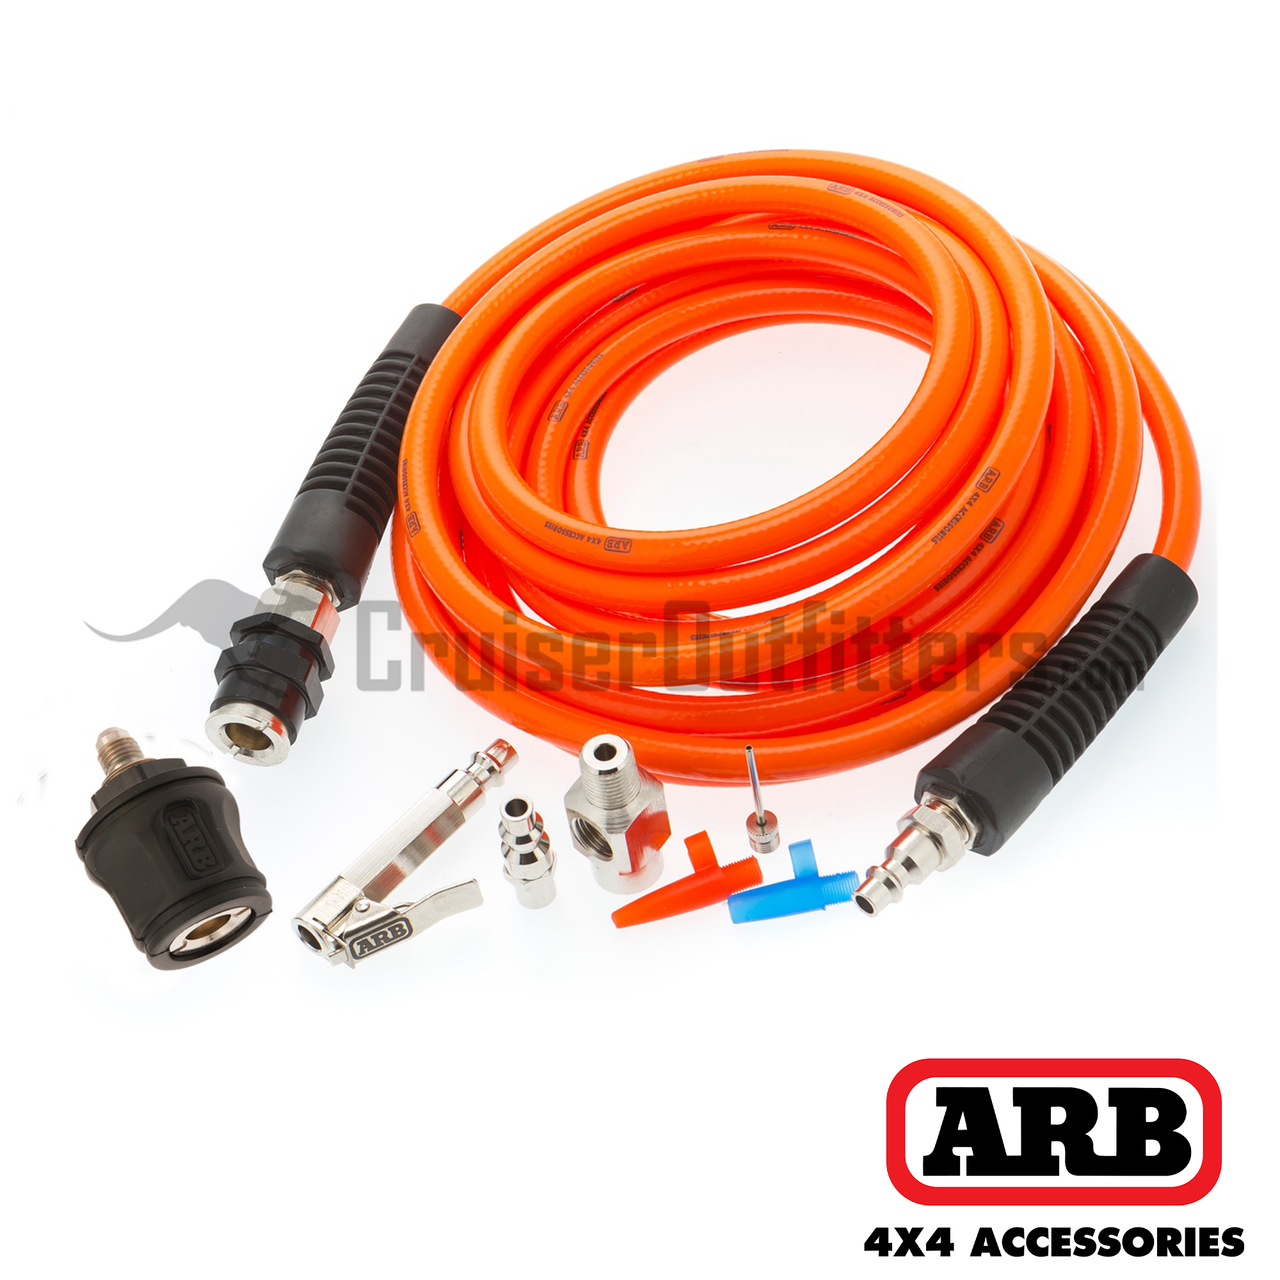 ARB Pump Up Kit - Fits ARB Air Compressor Applications (ARB 171302)